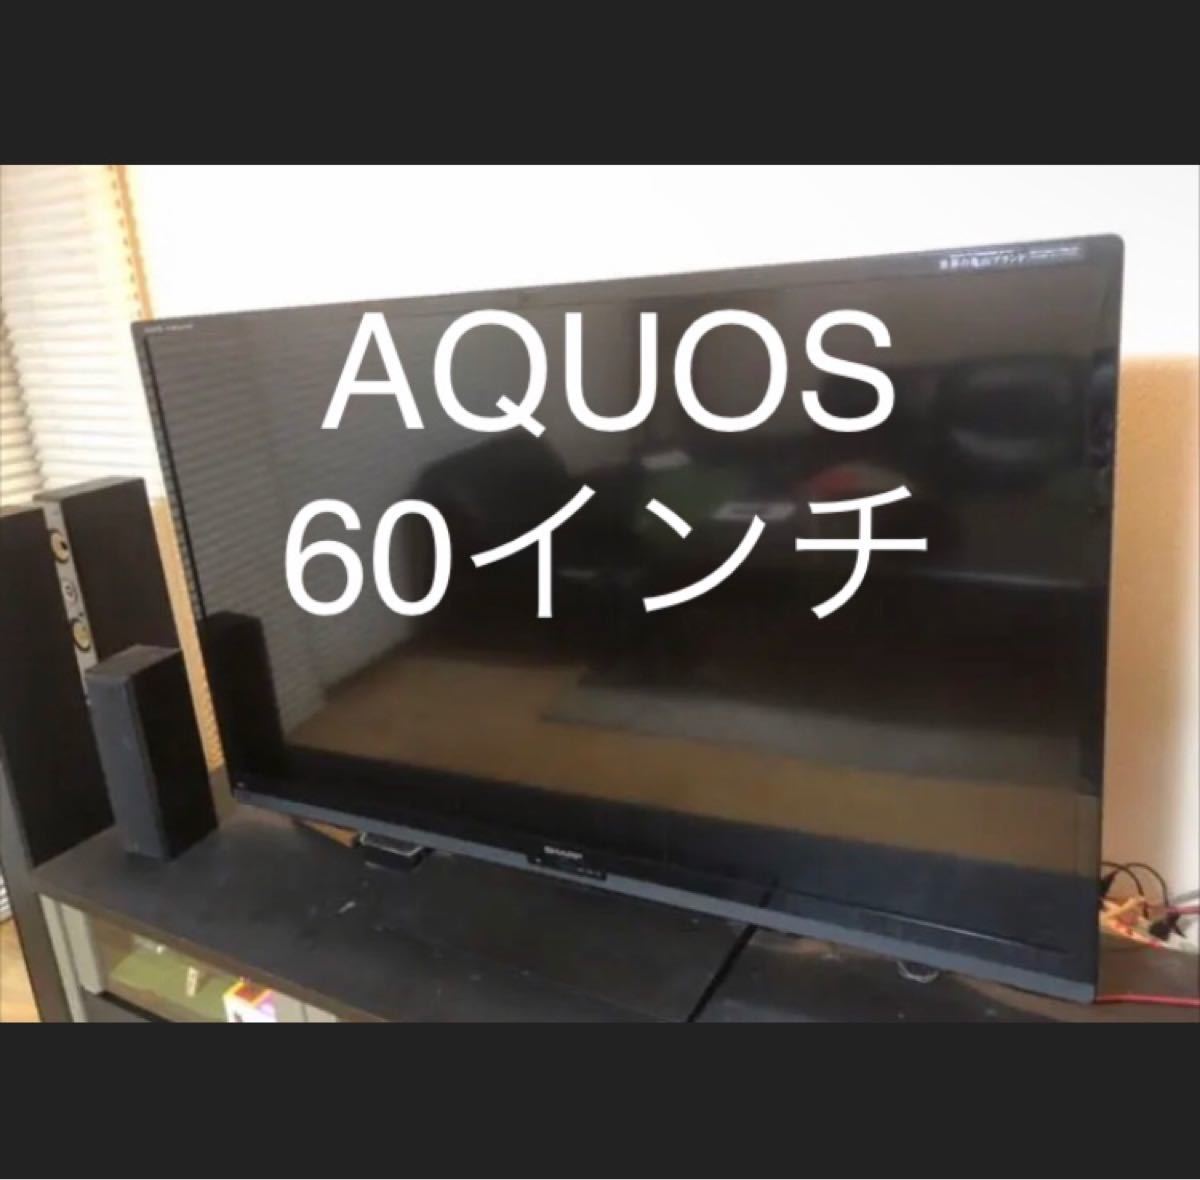 シャープ AQUOS 60型 ジャンク - library.iainponorogo.ac.id